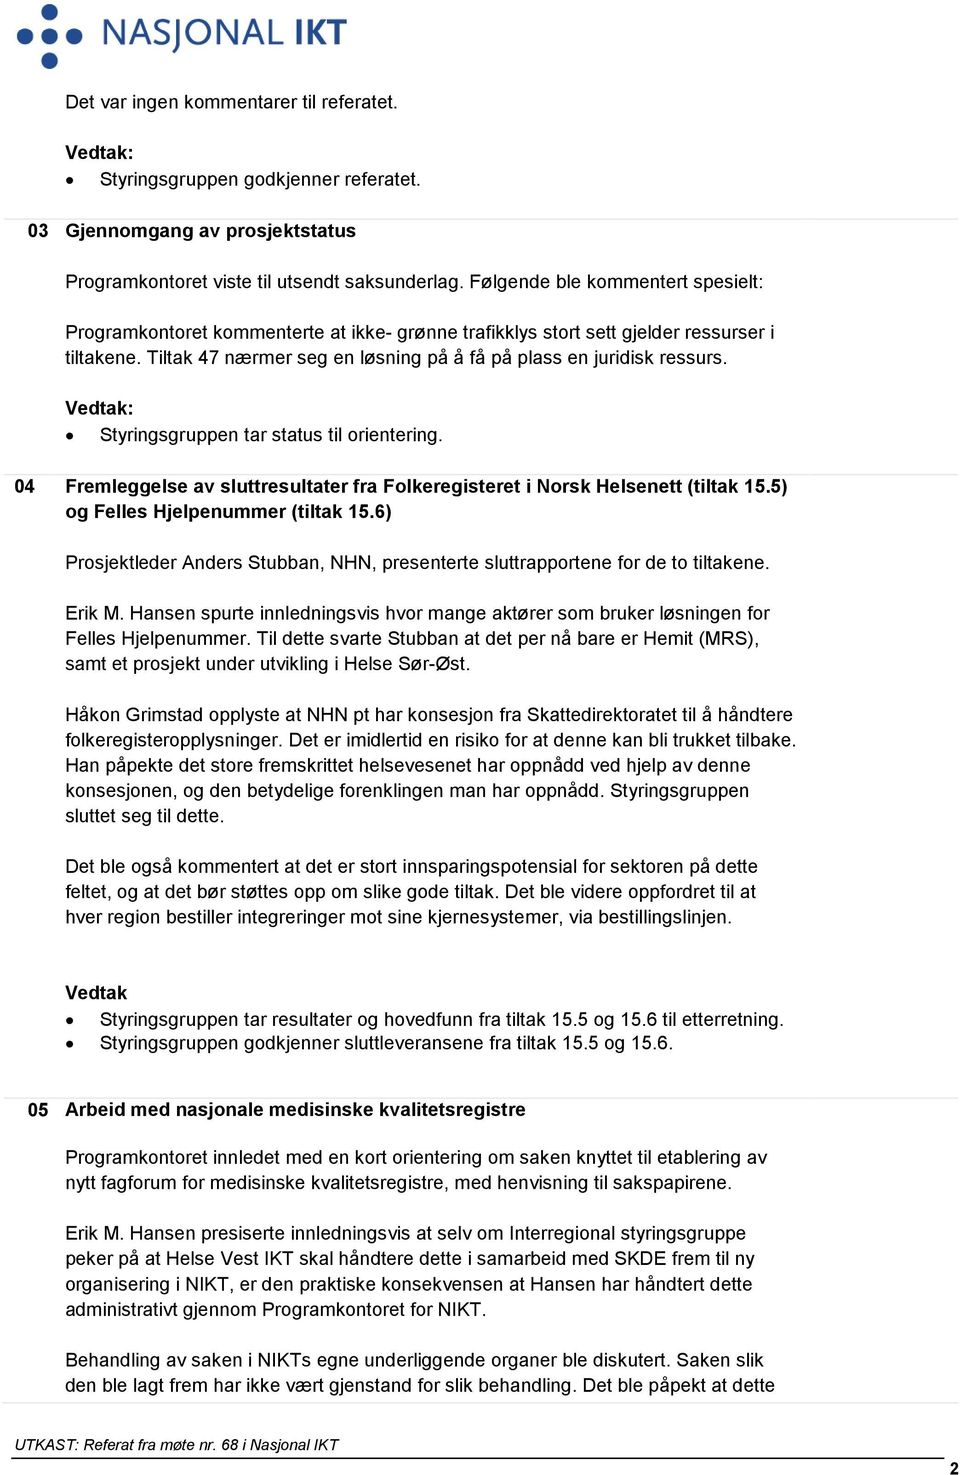 Styringsgruppen tar status til orientering. 04 Fremleggelse av sluttresultater fra Folkeregisteret i Norsk Helsenett (tiltak 15.5) og Felles Hjelpenummer (tiltak 15.